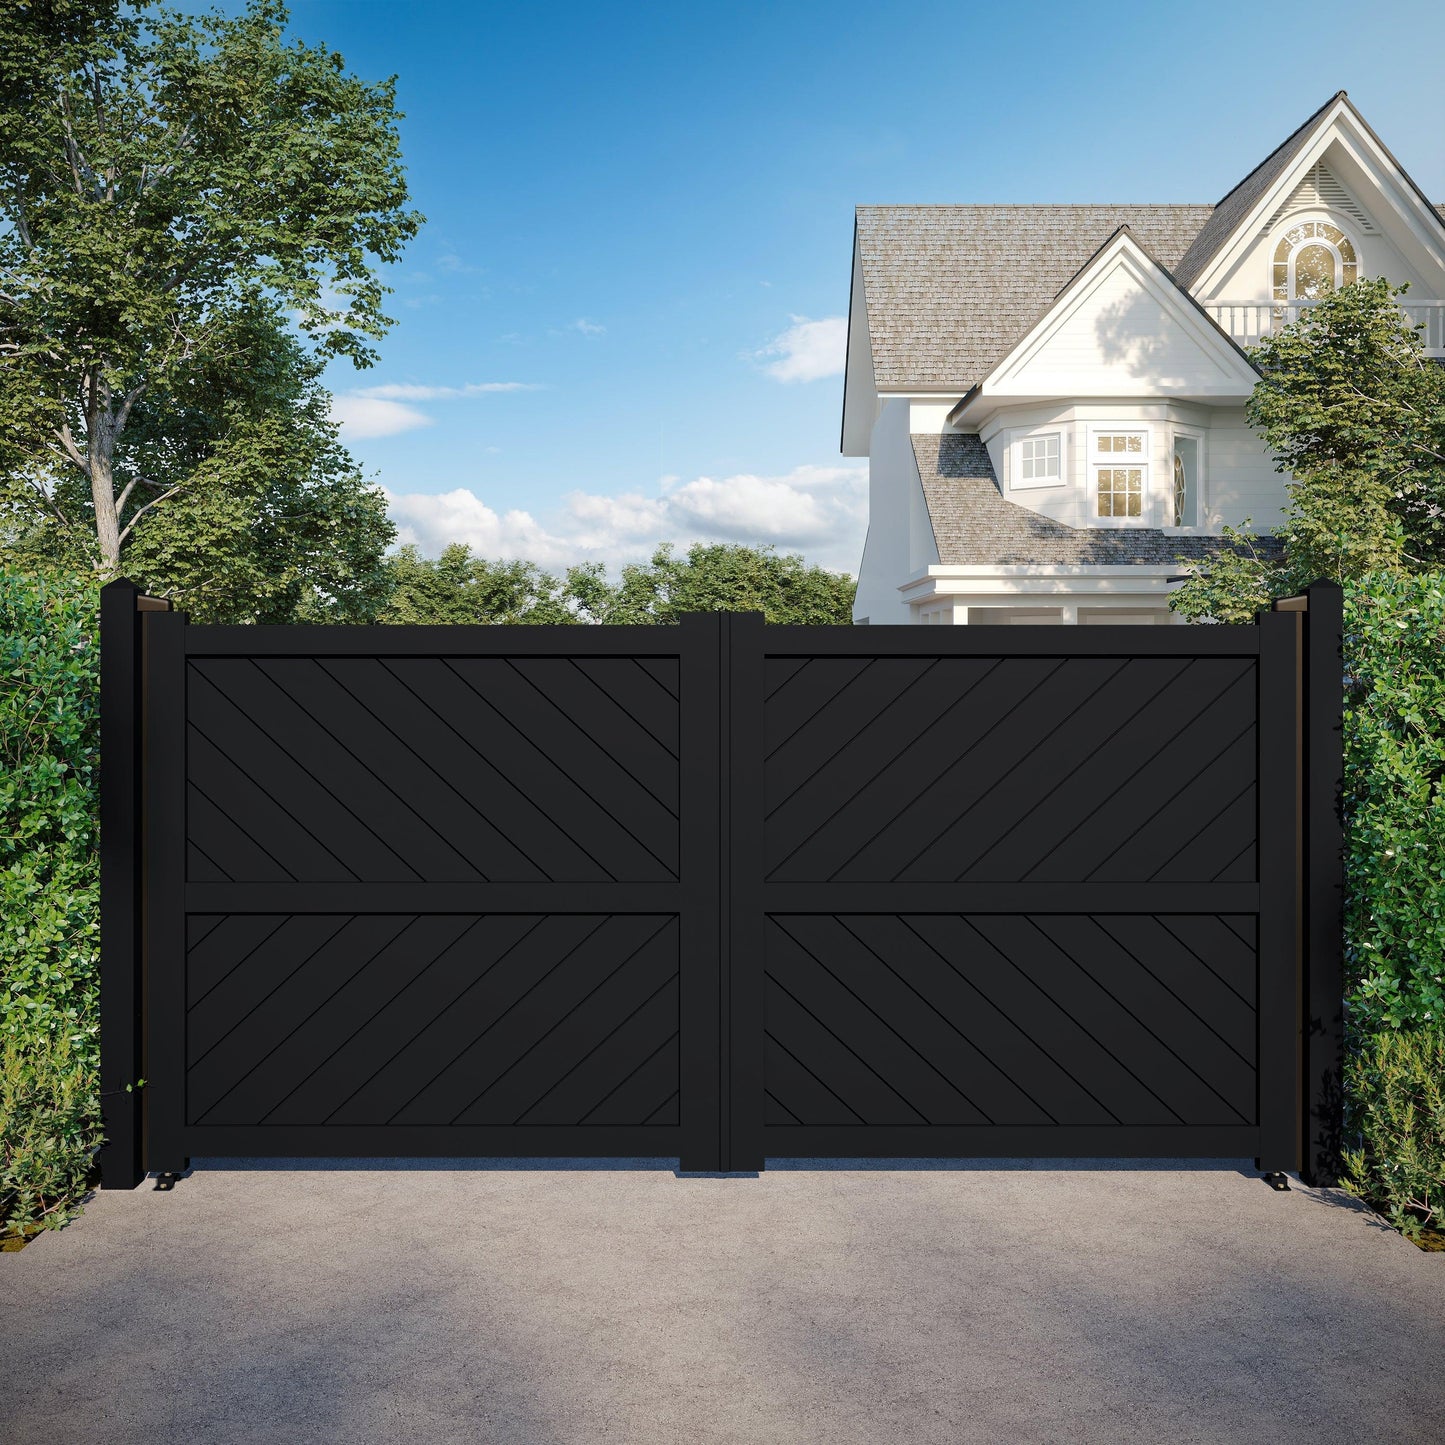 DiagonalElegance | Aluminium Full Privacy Diagonal Slat Driveway Gate - Residential Gates